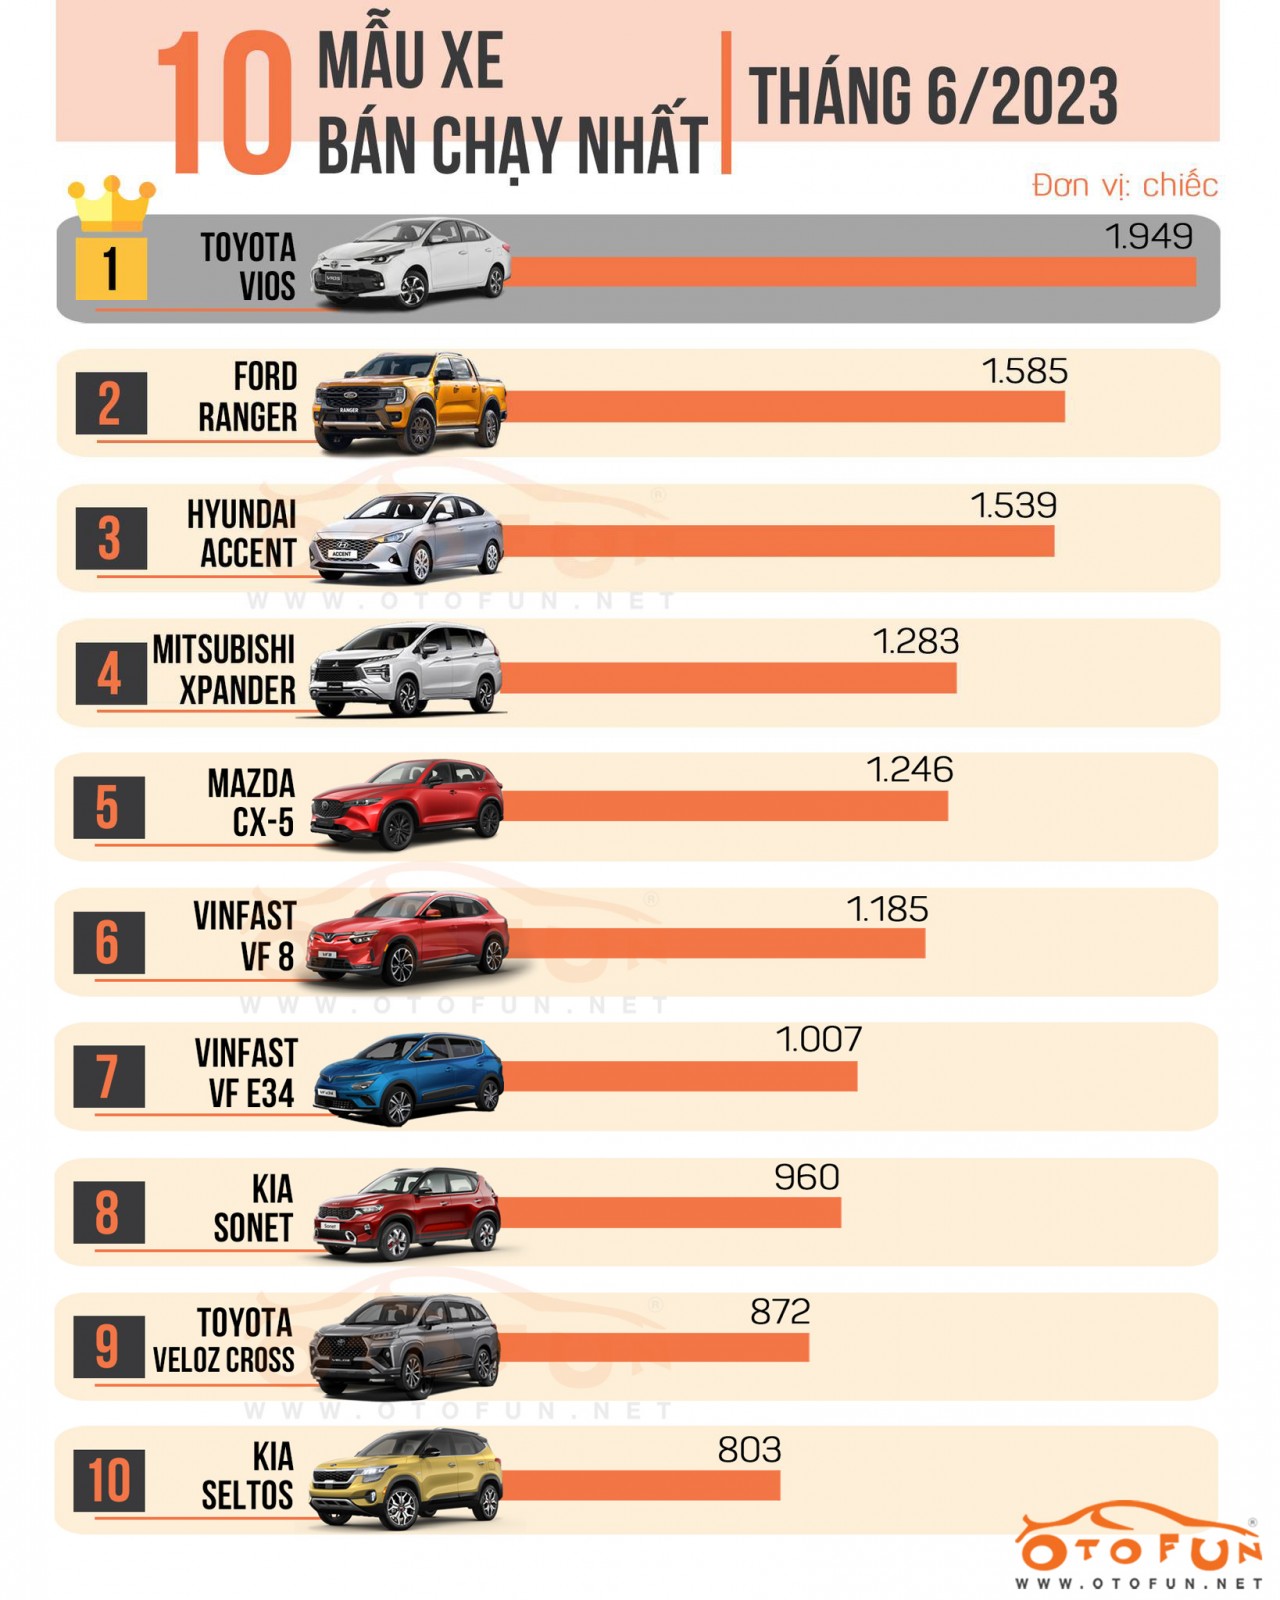 [Infographic] 10 xe bán chạy nhất tháng 6/2023: Vios quay lại 'ngôi vương'